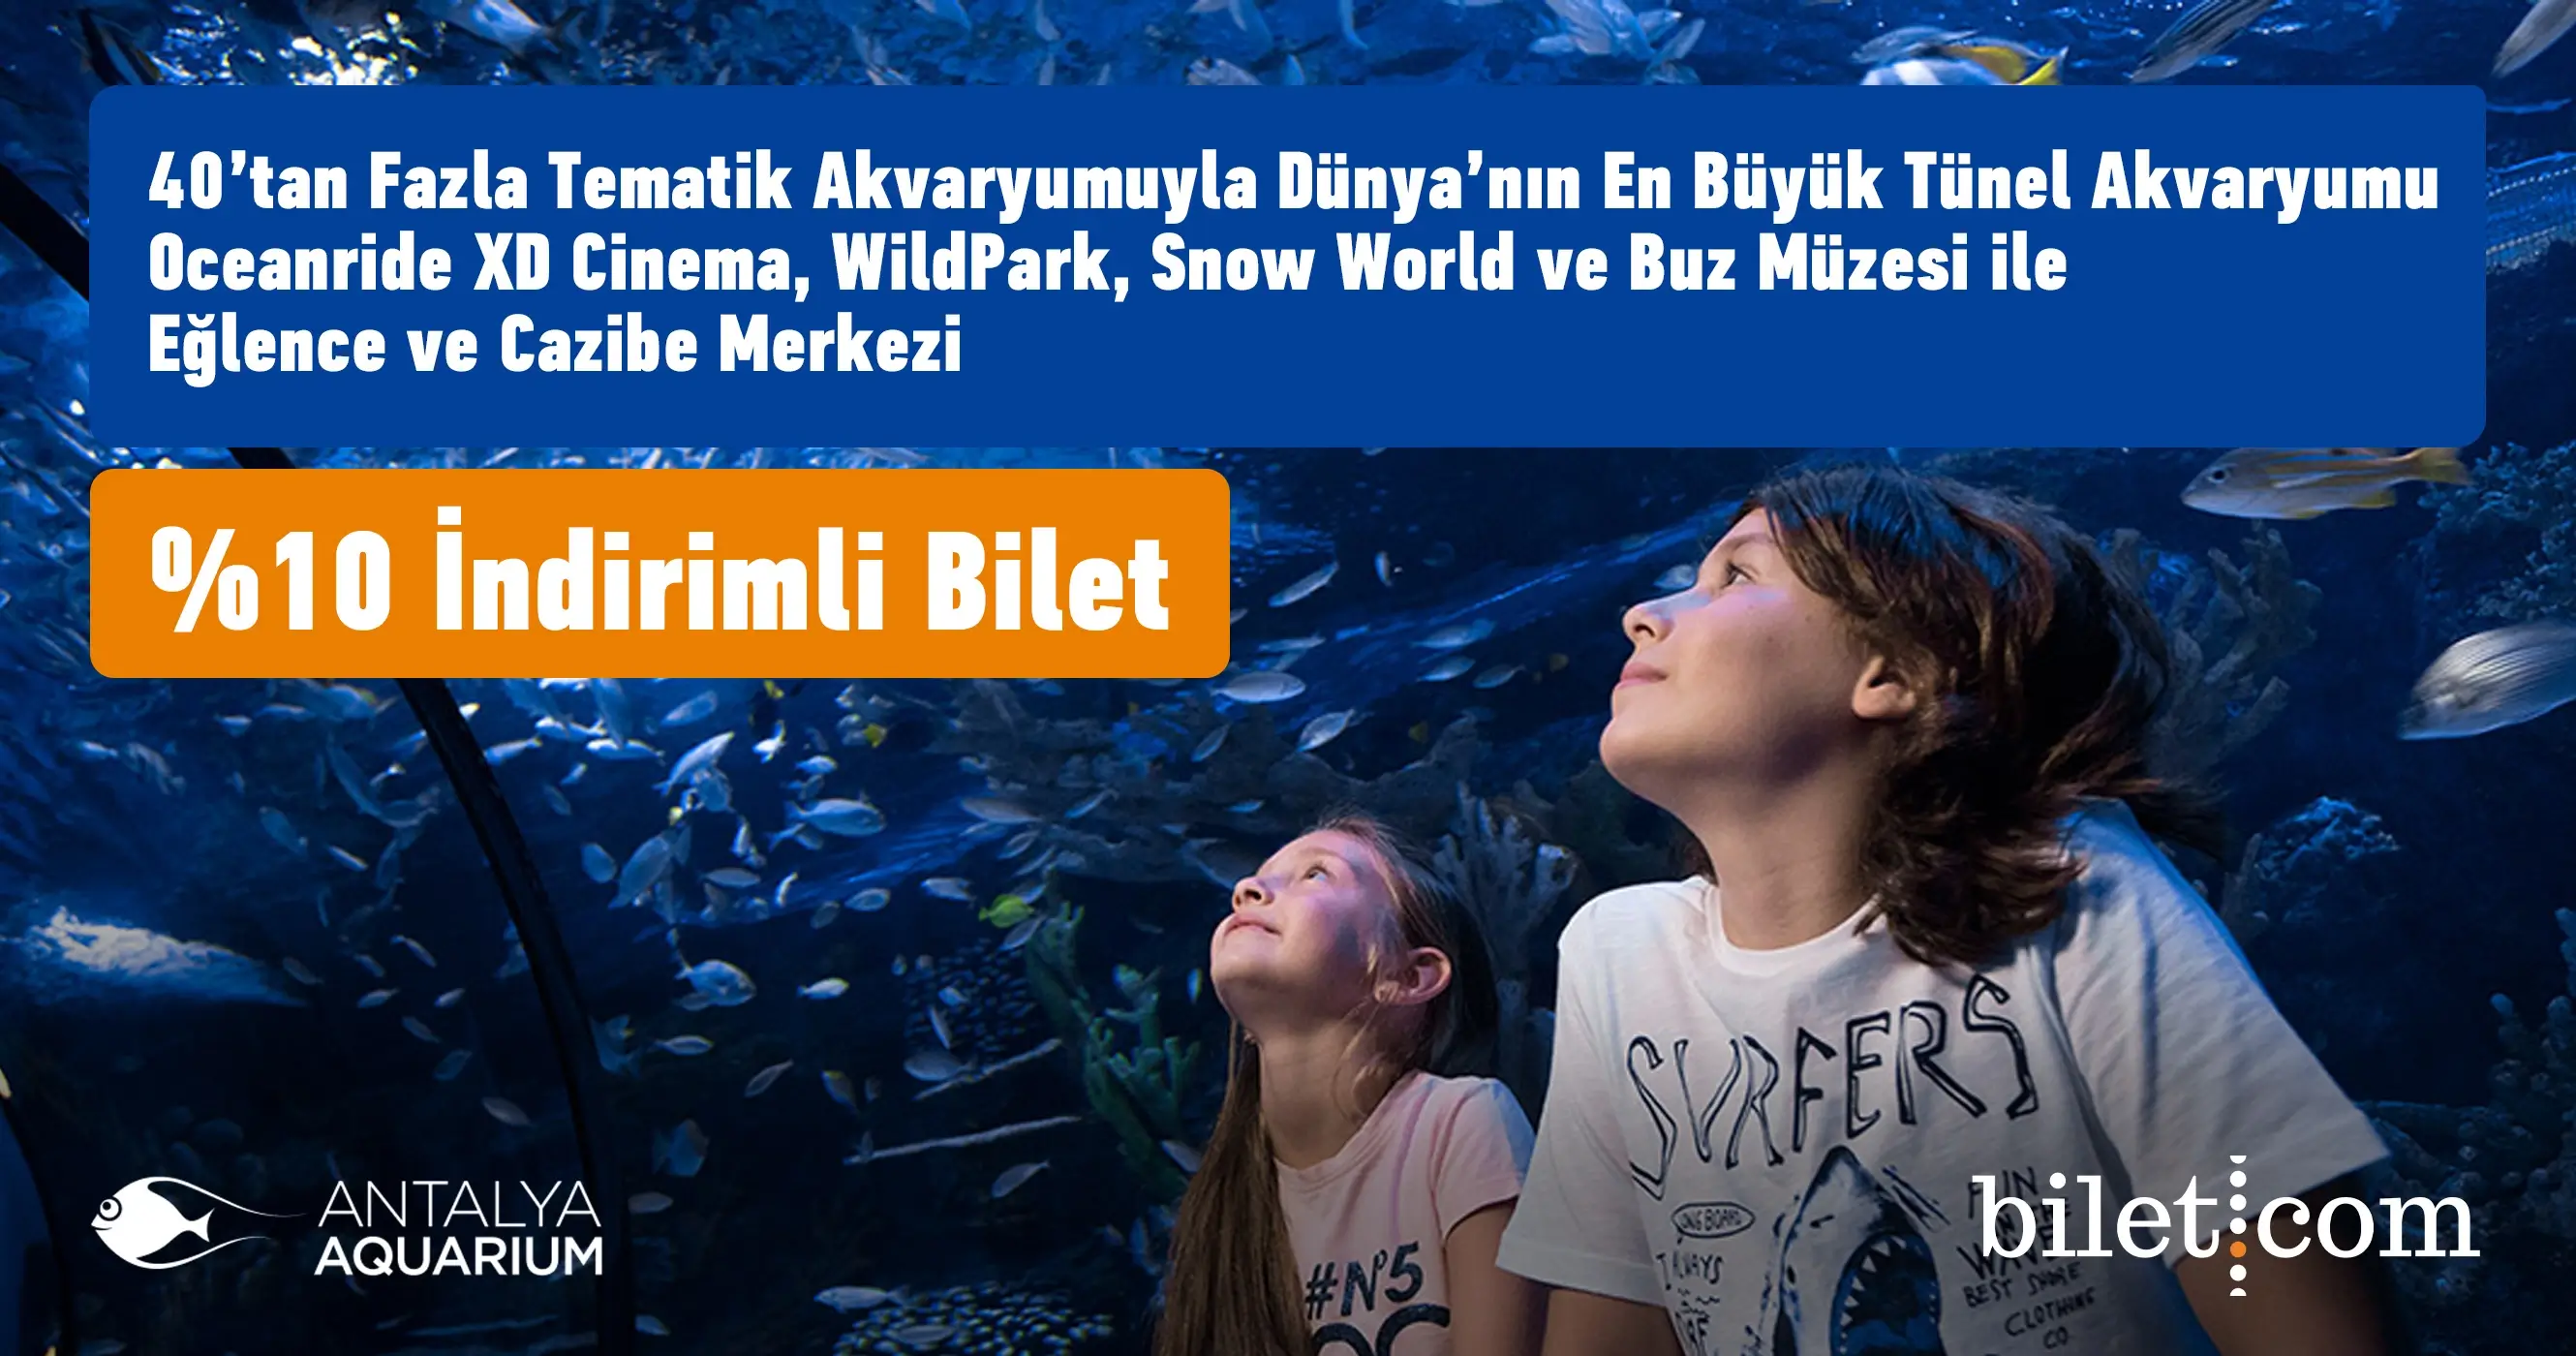 Antalya Aquarium Ticket - 1